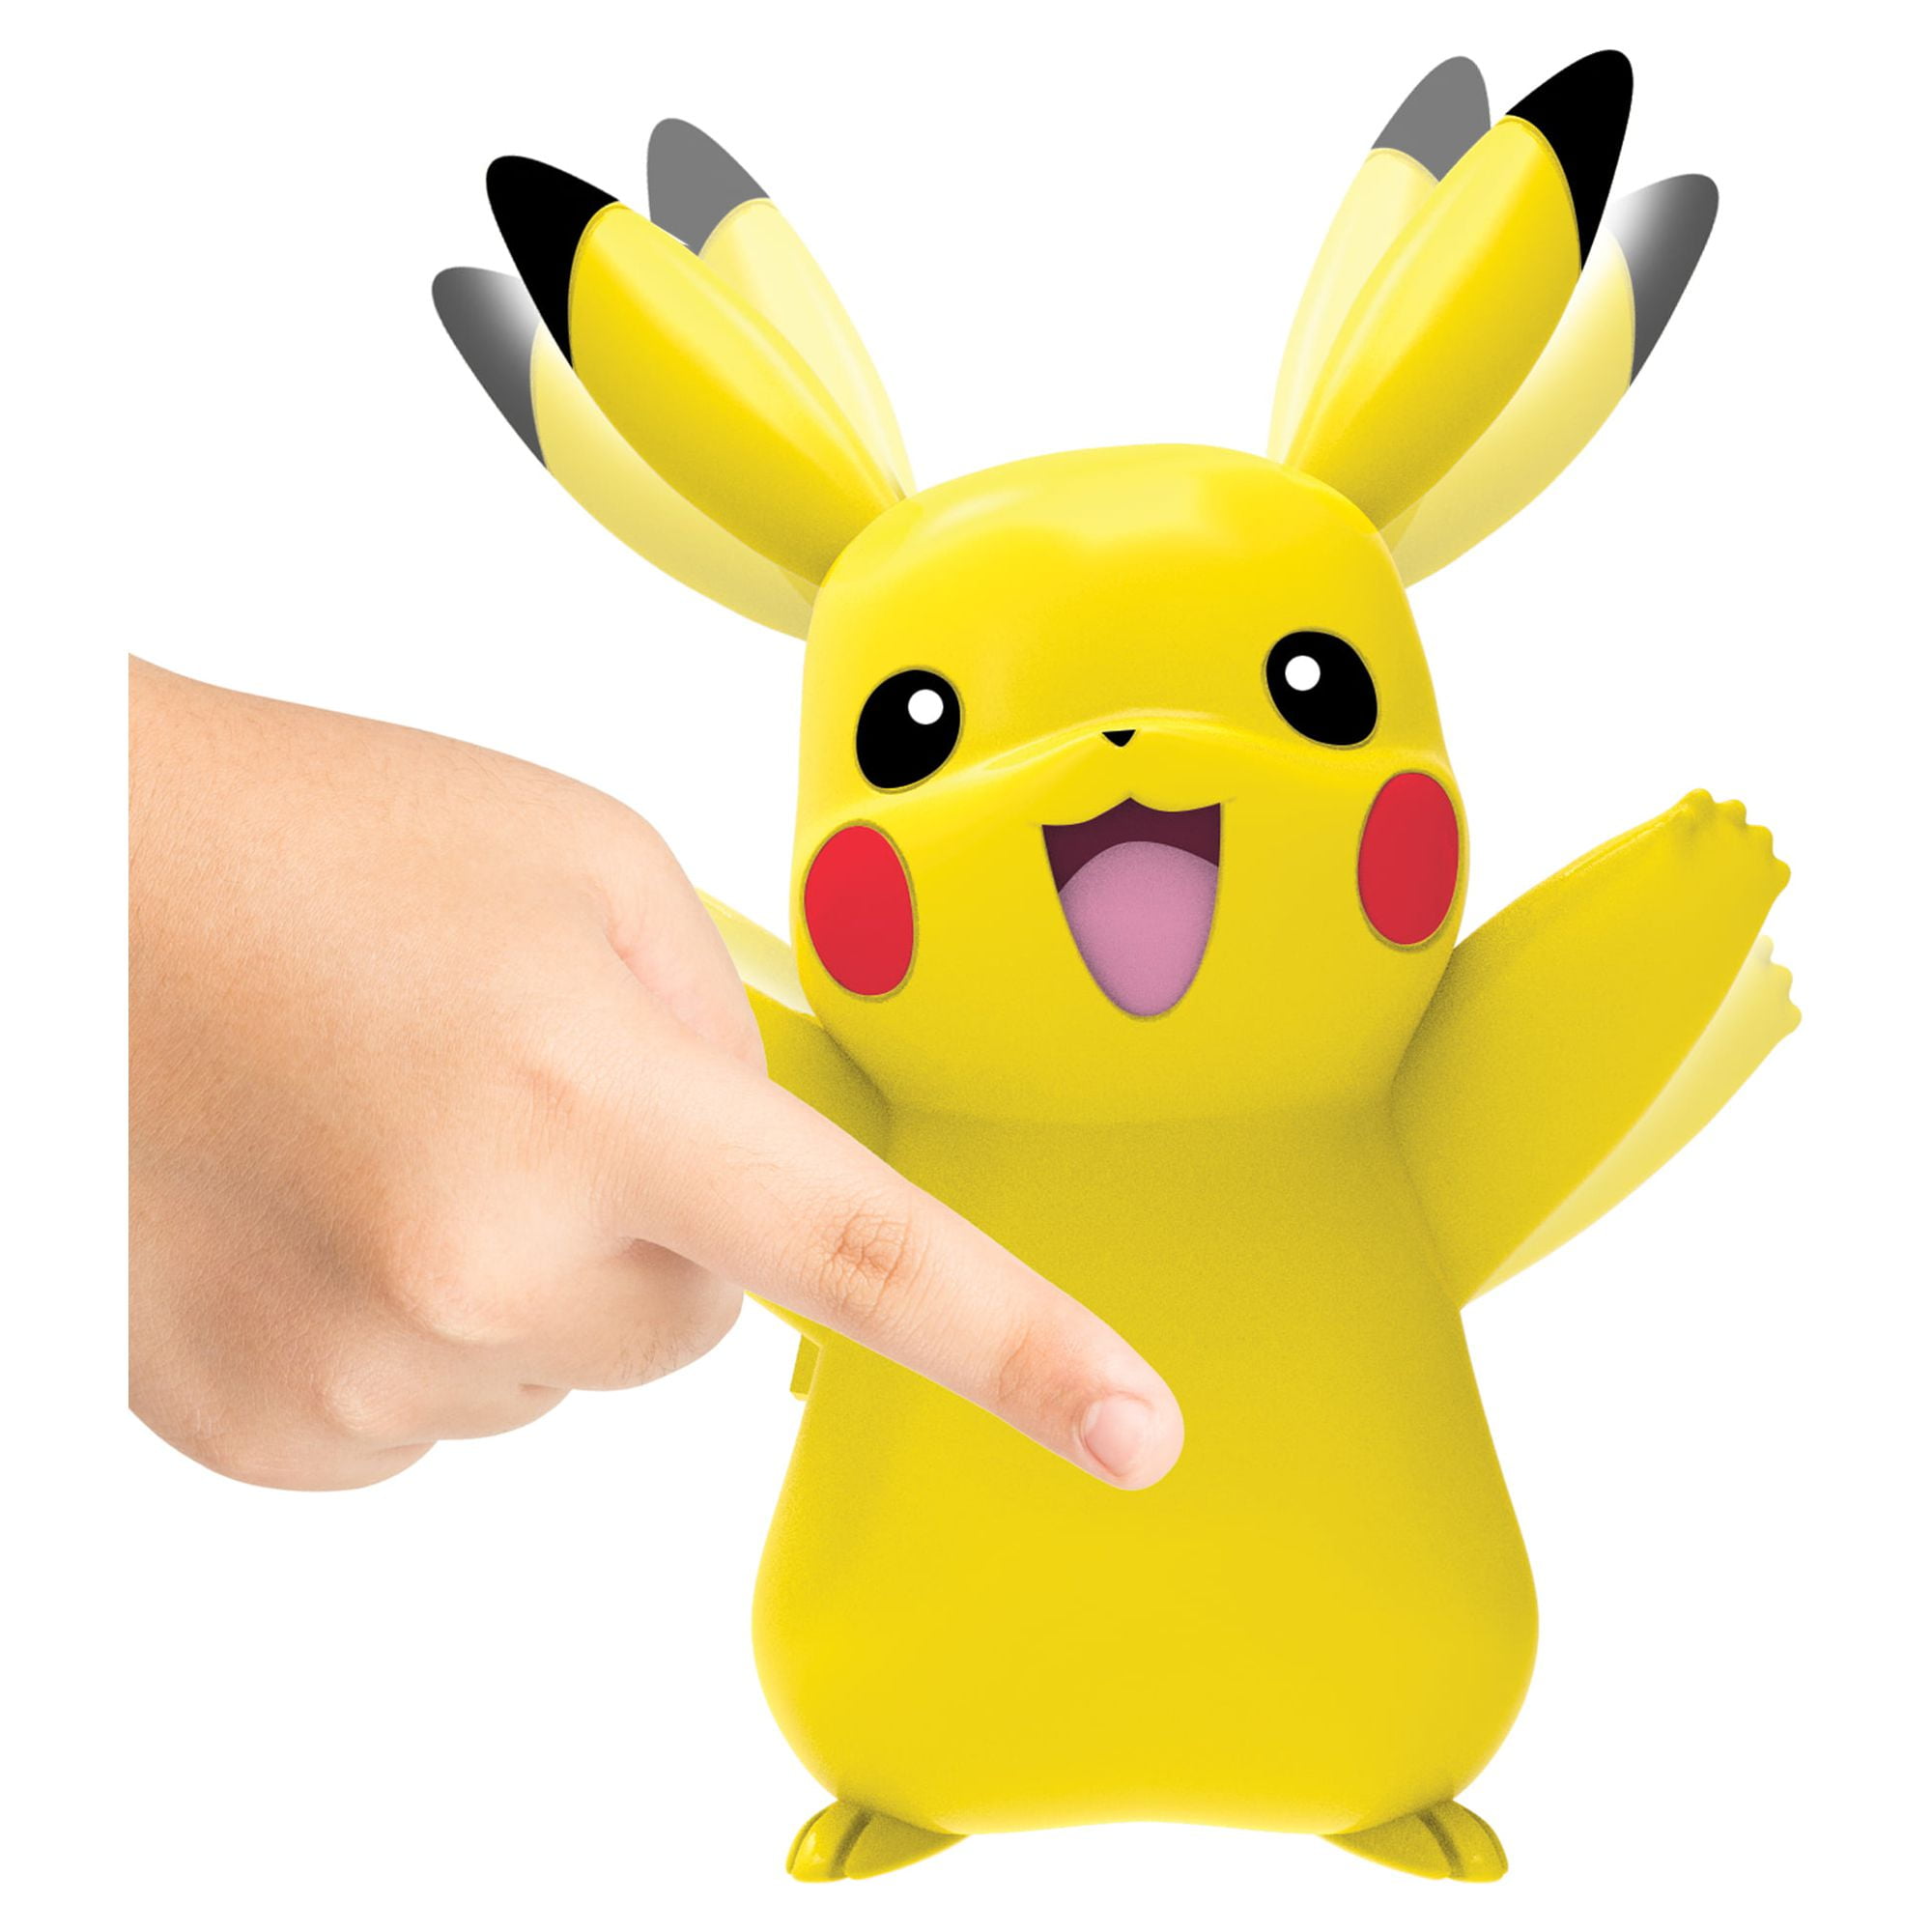 POKEMON - My Partner Pikachu - Jeu électronique interactif